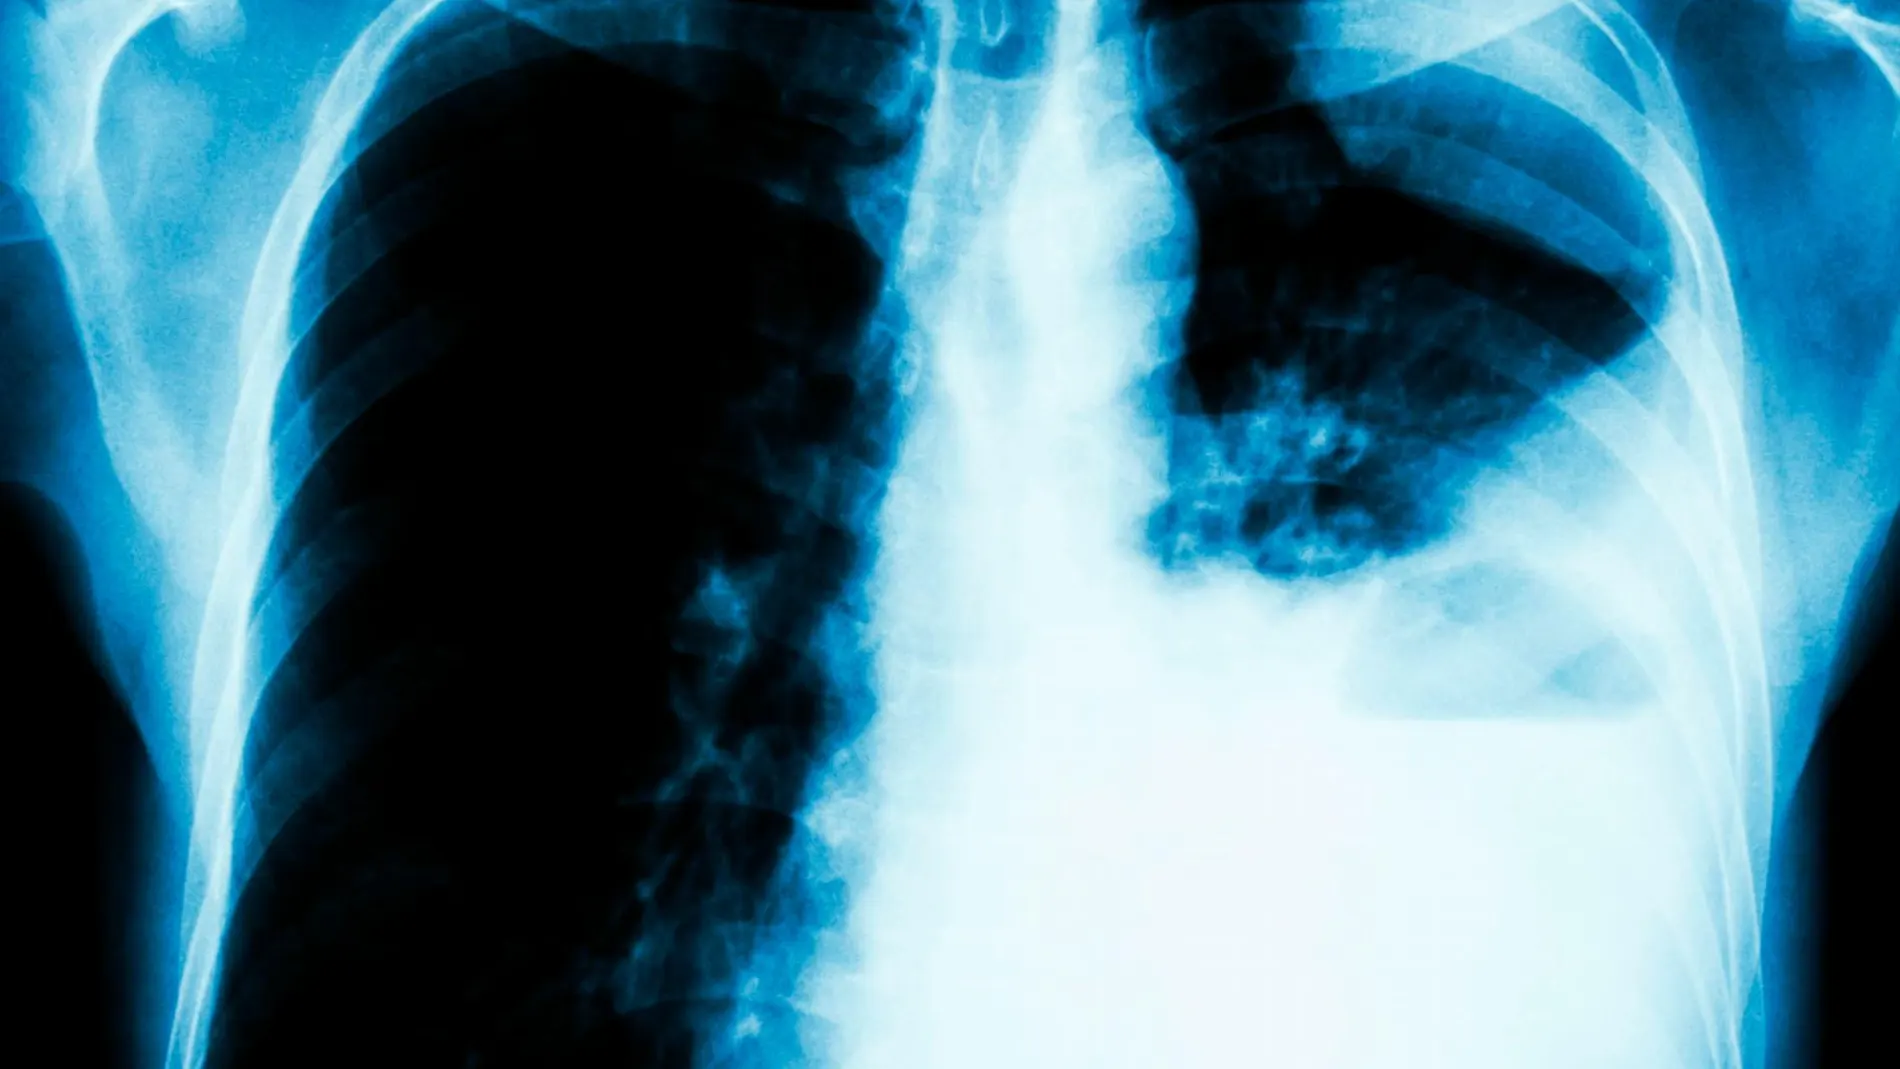 El cáncer de pulmón es el tercero más frecuente y principal causa de muerte por cáncer, tanto en hombres como en mujeres